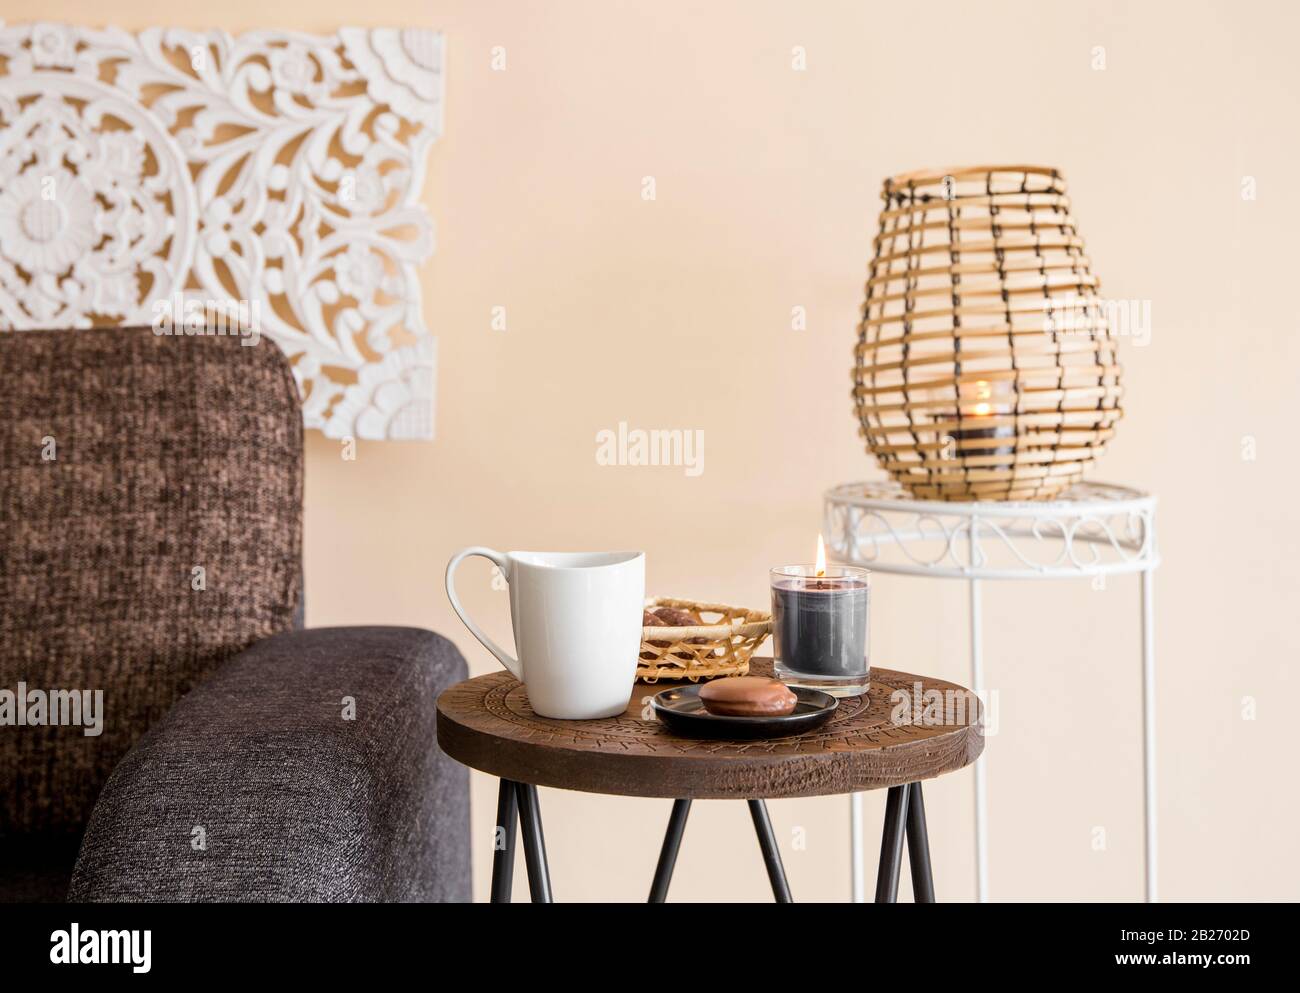 Modernes, minimalistisches Wohnzimmer mit dekorativen Elementen im asiatischen Stil. Geschnitzte Wandtafel, Bambuskerze Laterne, kleiner Holzseitentisch. Stockfoto